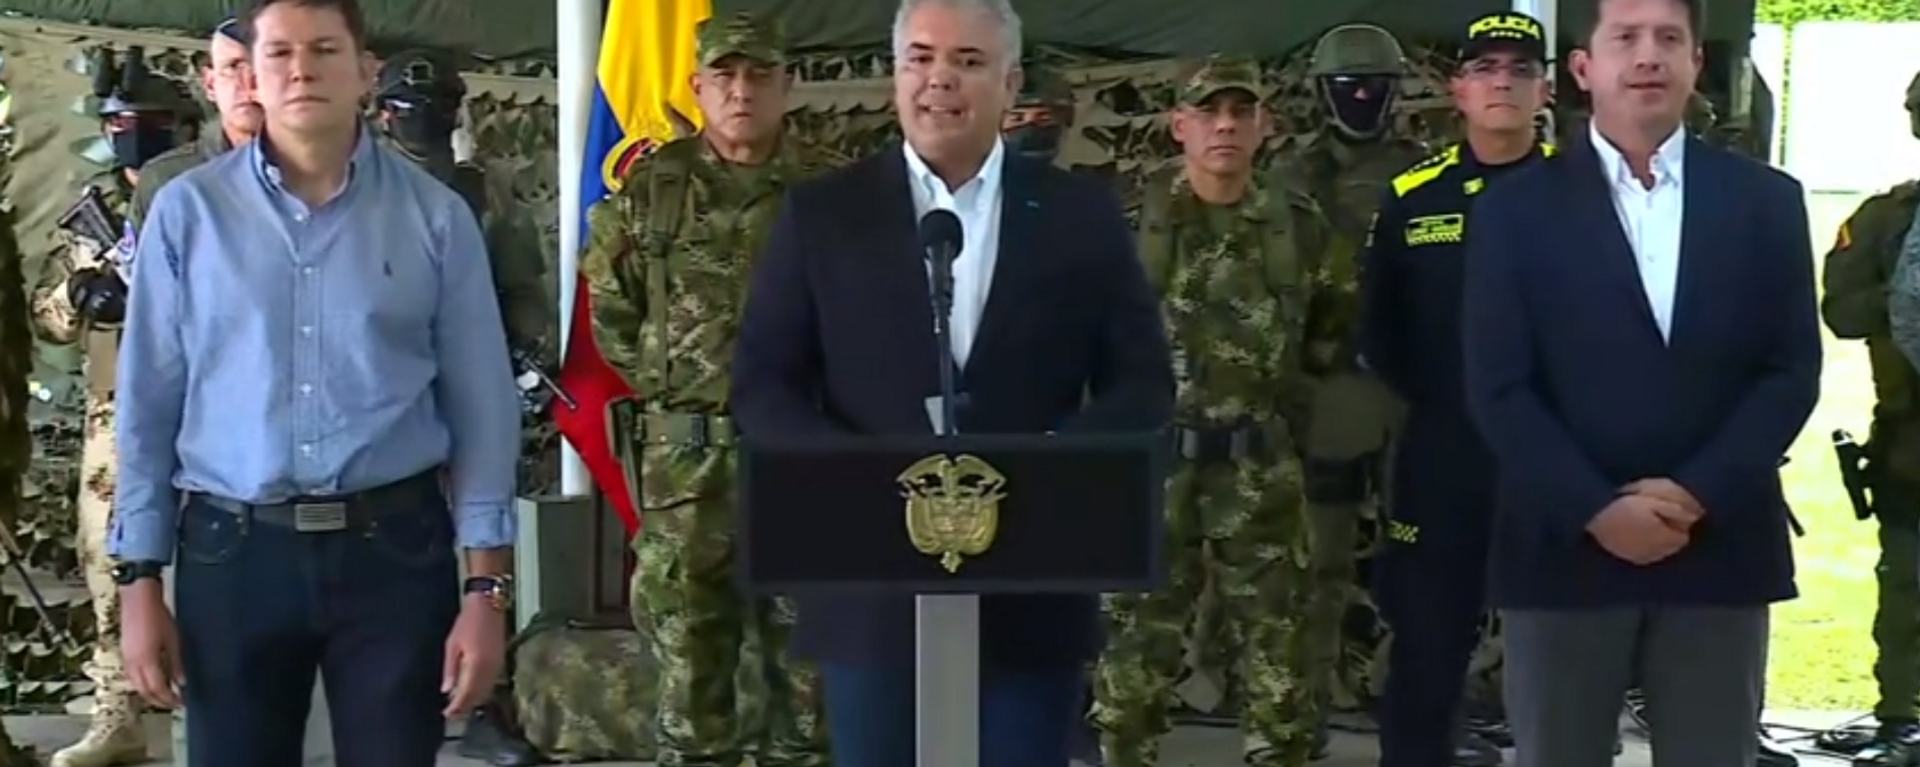 Iván Duque, presidente de Colombia, ofrece declaración por la captura de 'Otoniel', el narco más buscado de Colombia, el 23 de octubre del 2021 - Sputnik Mundo, 1920, 24.10.2021